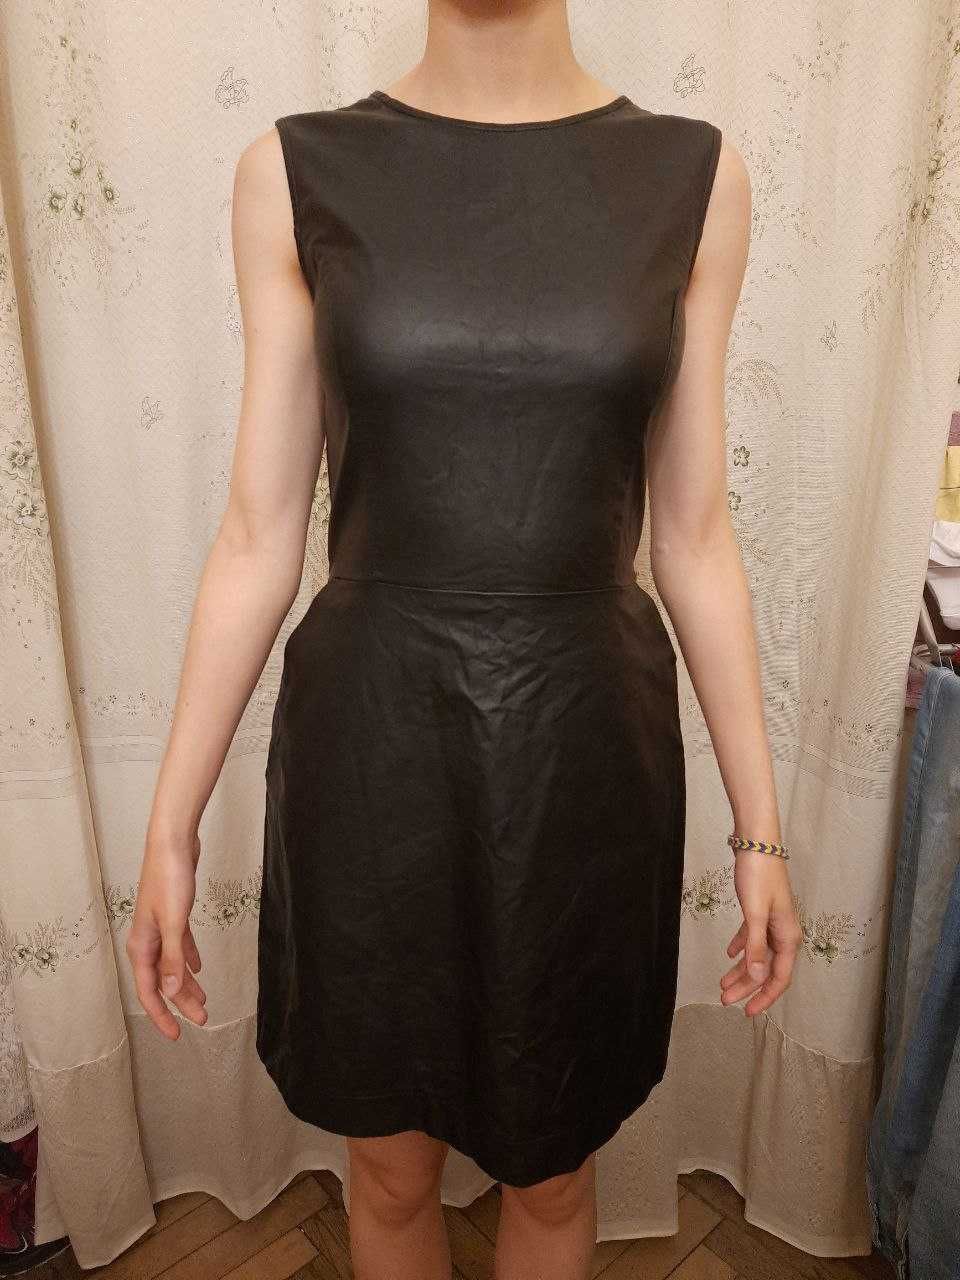 Шкіряна  стрейчева м' якенька чорна сукня XS за 200грн